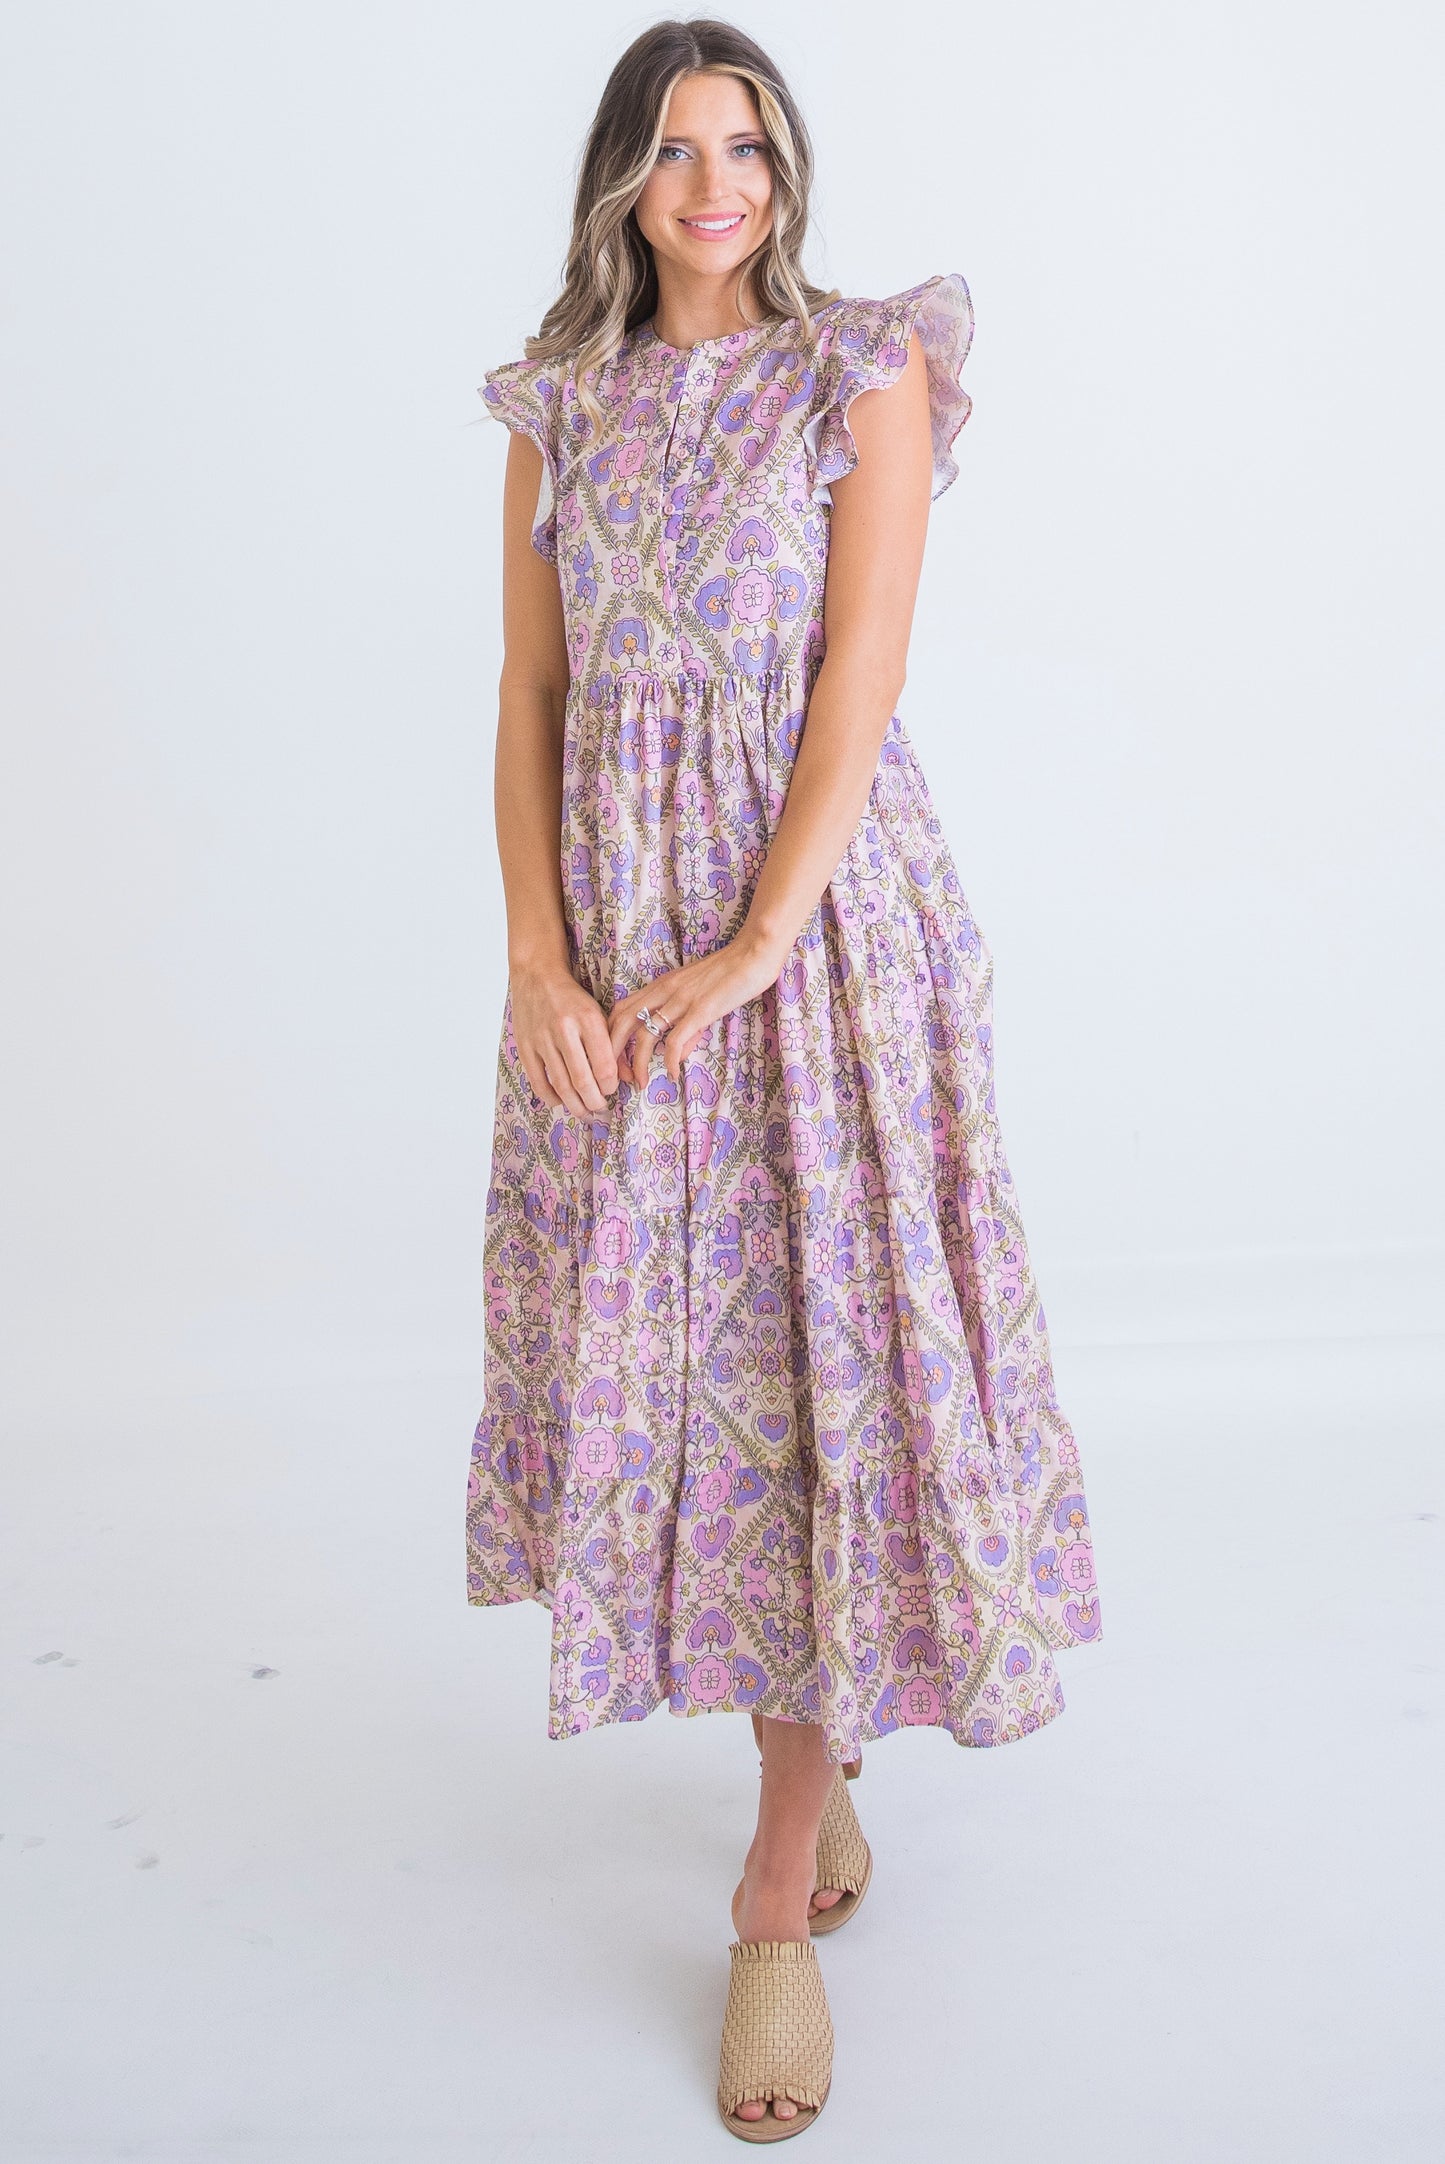 Violet Taylor Maxi Dress